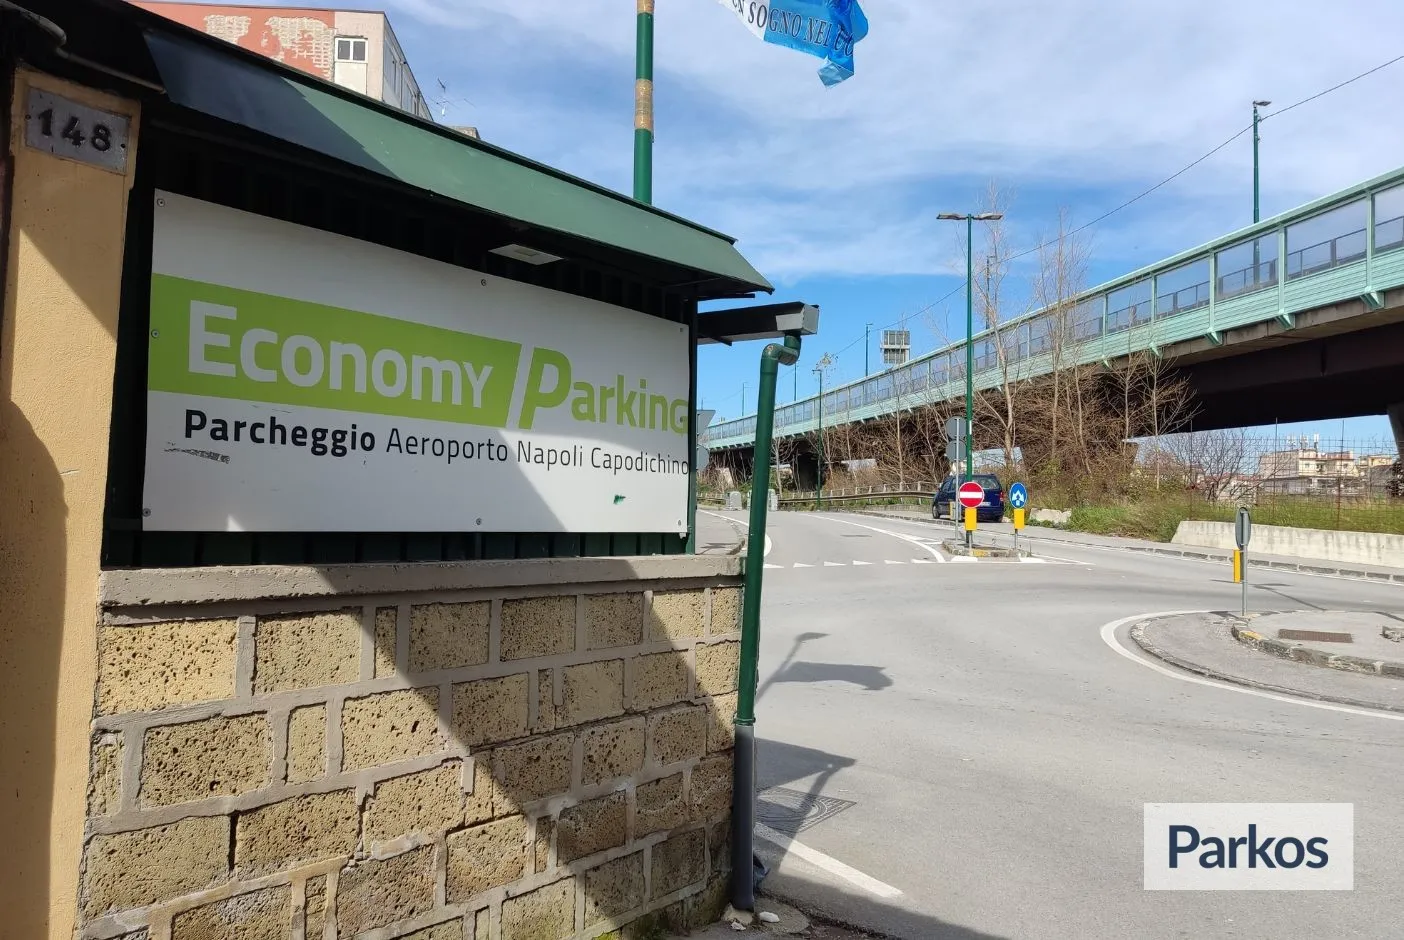 Economy Parking (Paga in parcheggio) - Parcheggio Aeroporto Napoli - picture 1